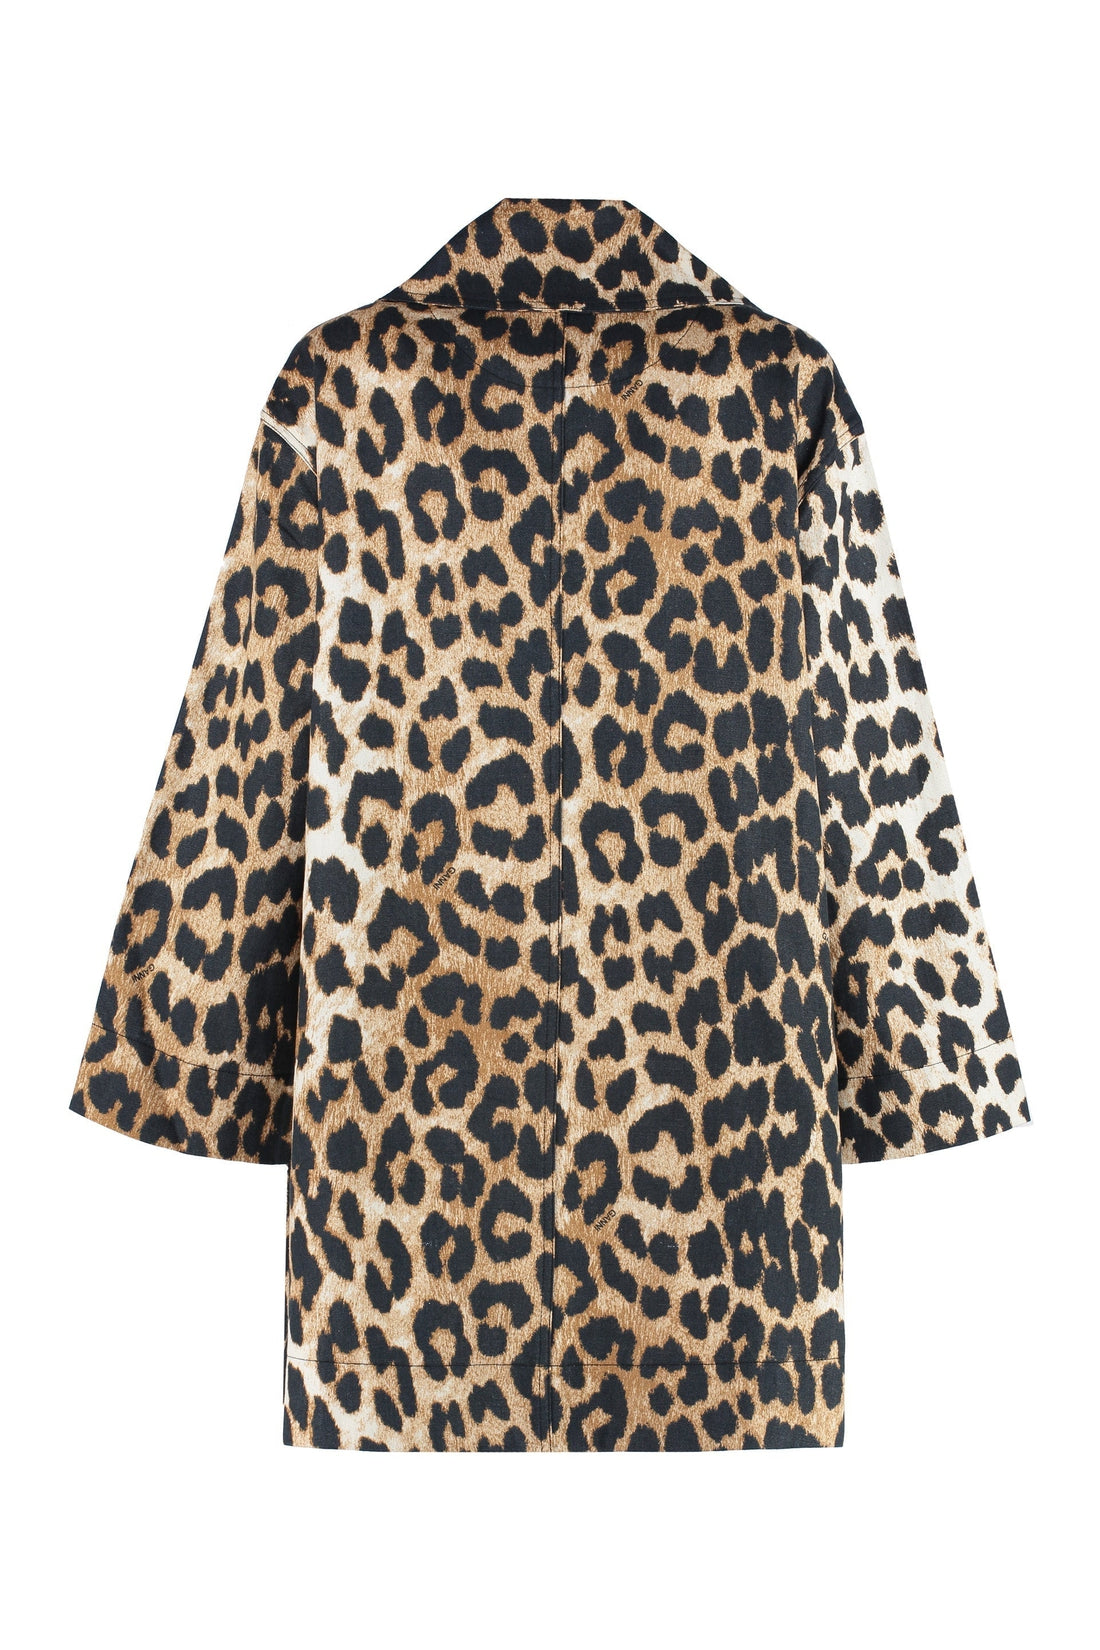 GANNI-OUTLET-SALE-Leopard print jacket-ARCHIVIST